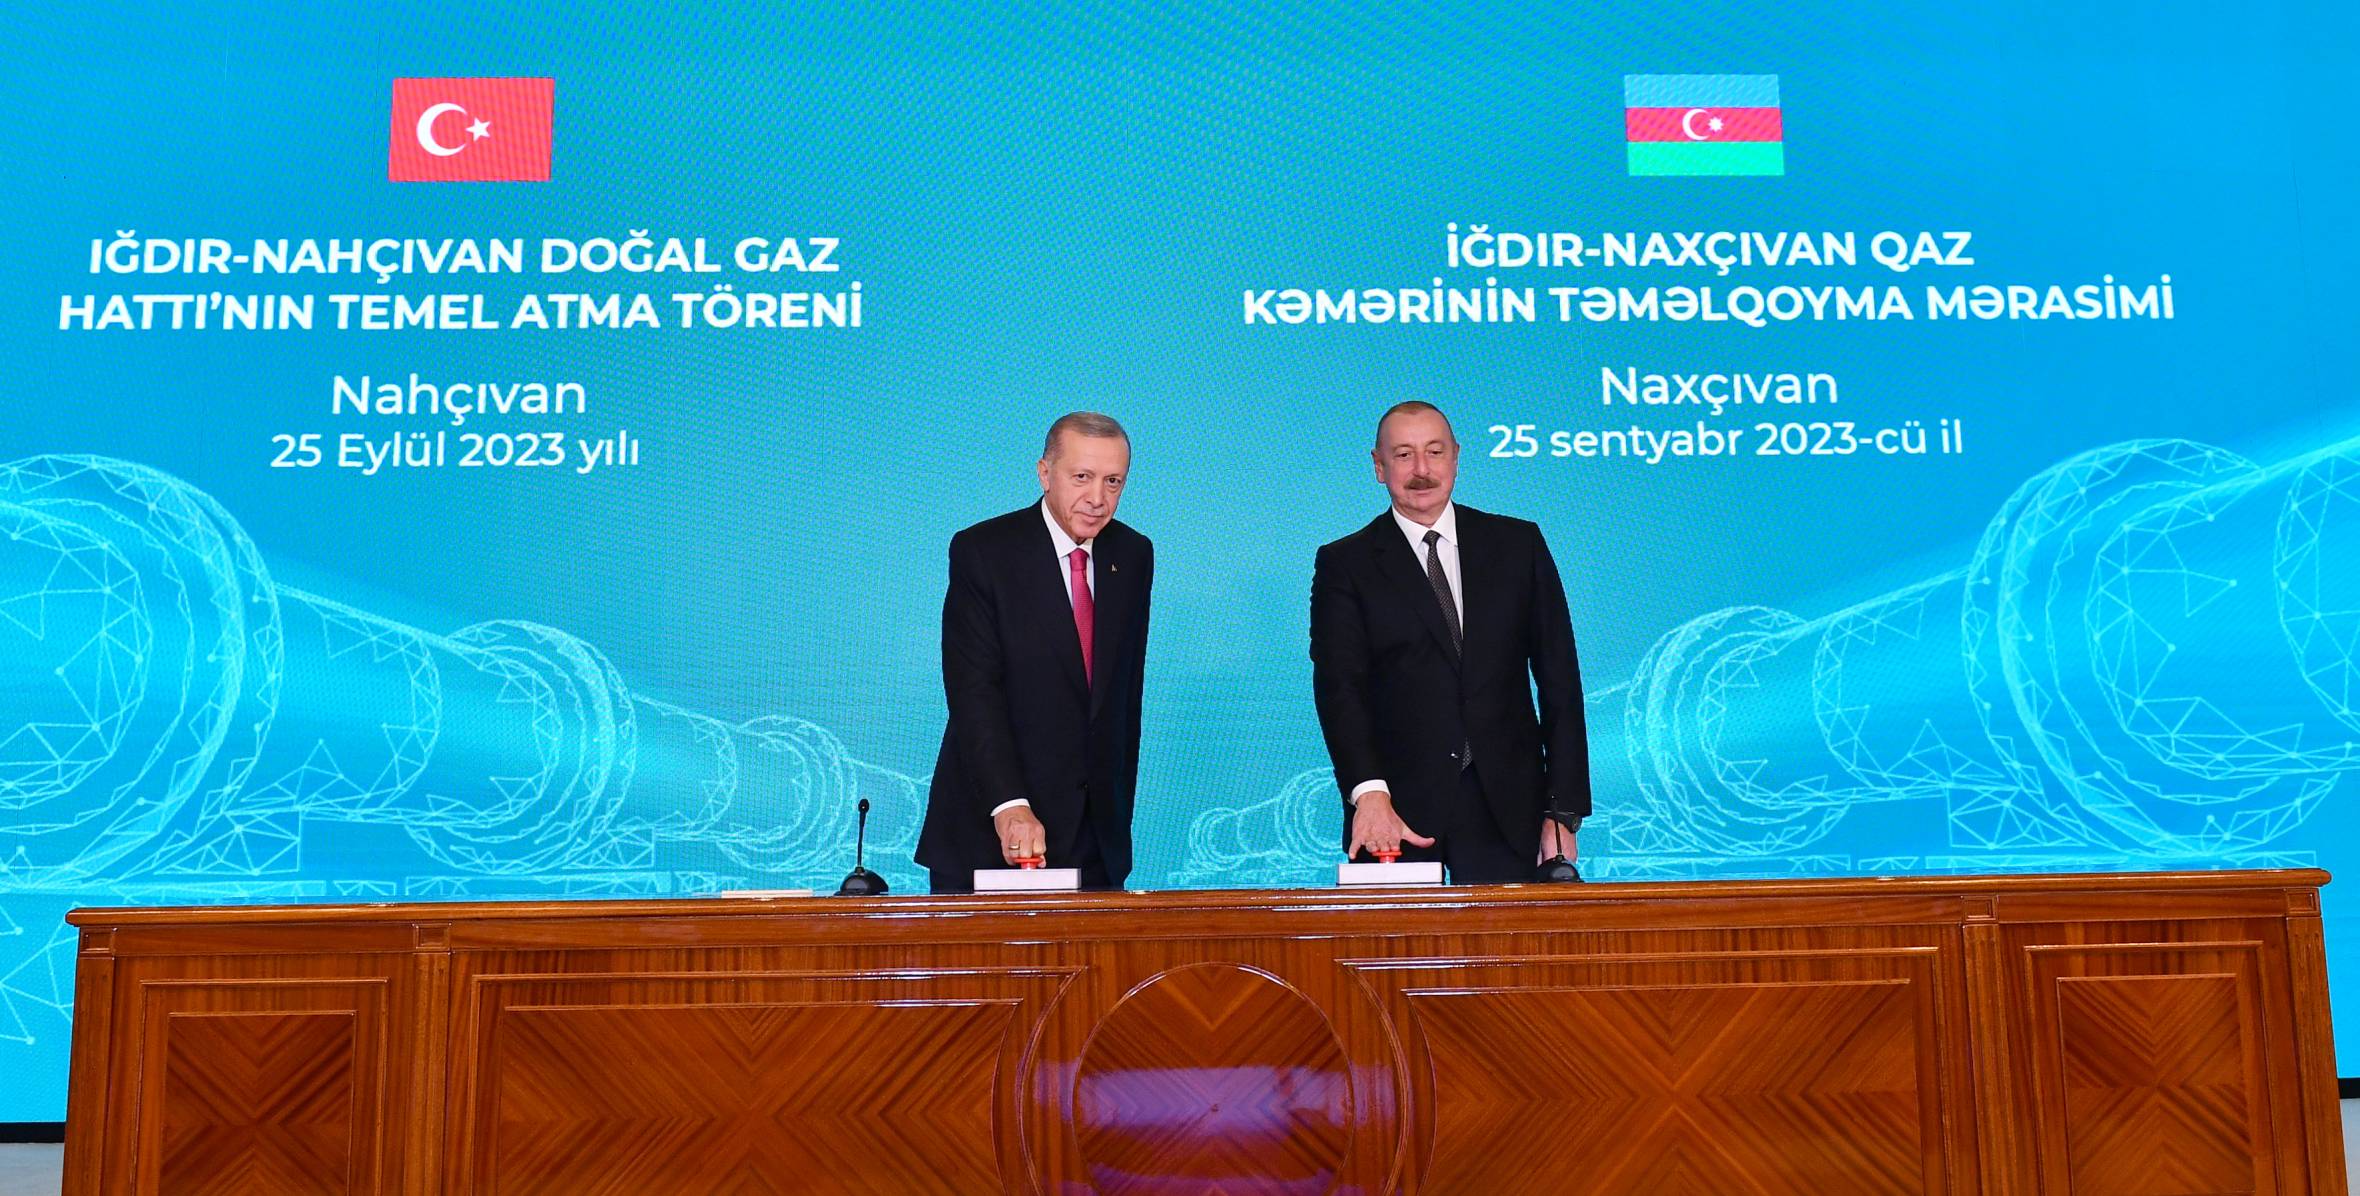 Ильхам Алиев и Президент Реджеп Тайип Эрдоган приняли участие в церемонии закладки фундамента газопровода Игдыр-Нахчыван